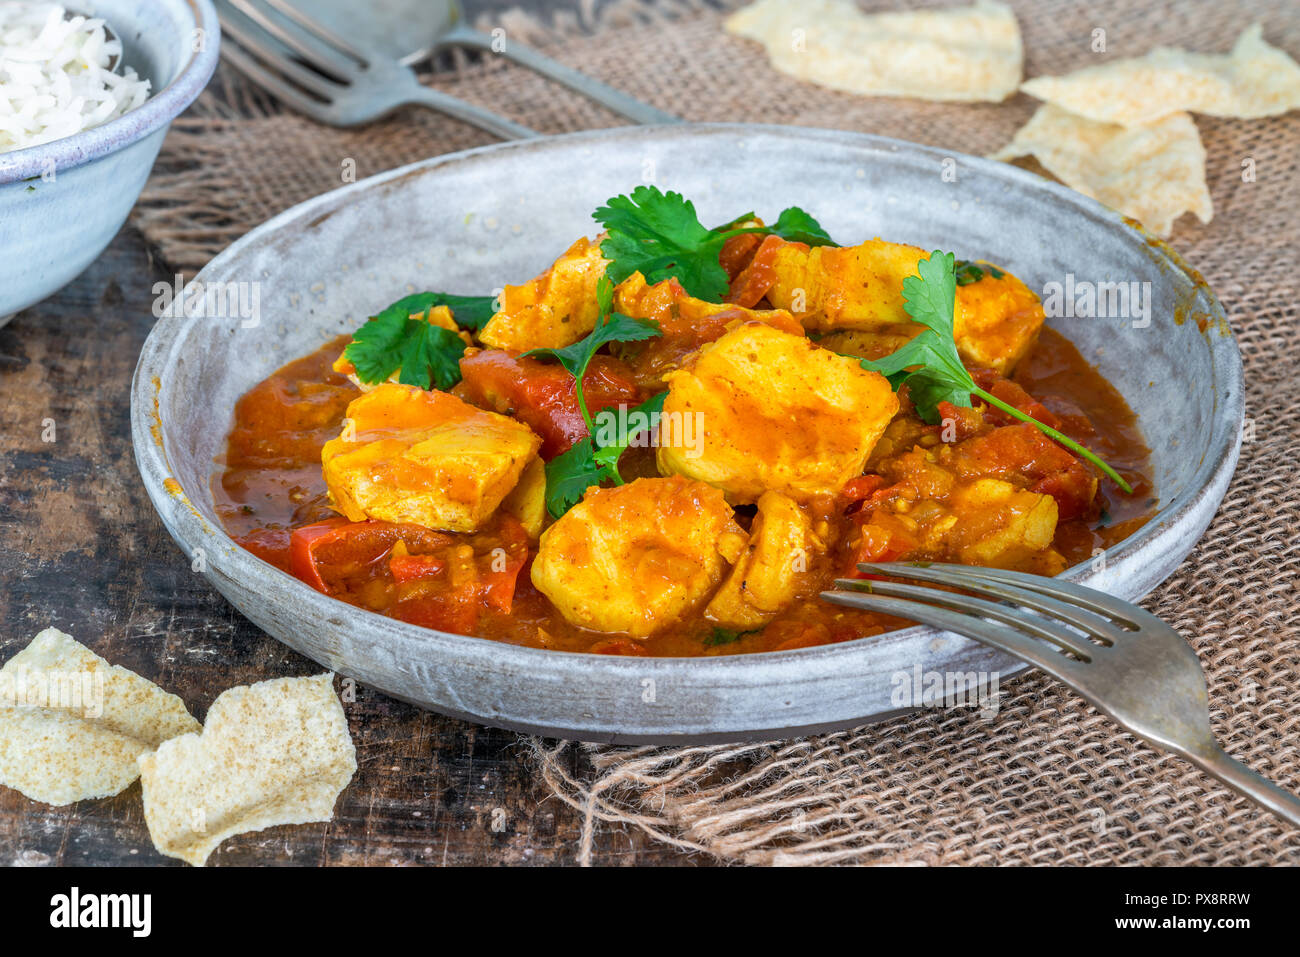 Pesce Mappas - stile del Kerala coconut pesce al curry con riso. Si tratta di un piatto popolare nel sud dello stato indiano del Kerala. Foto Stock